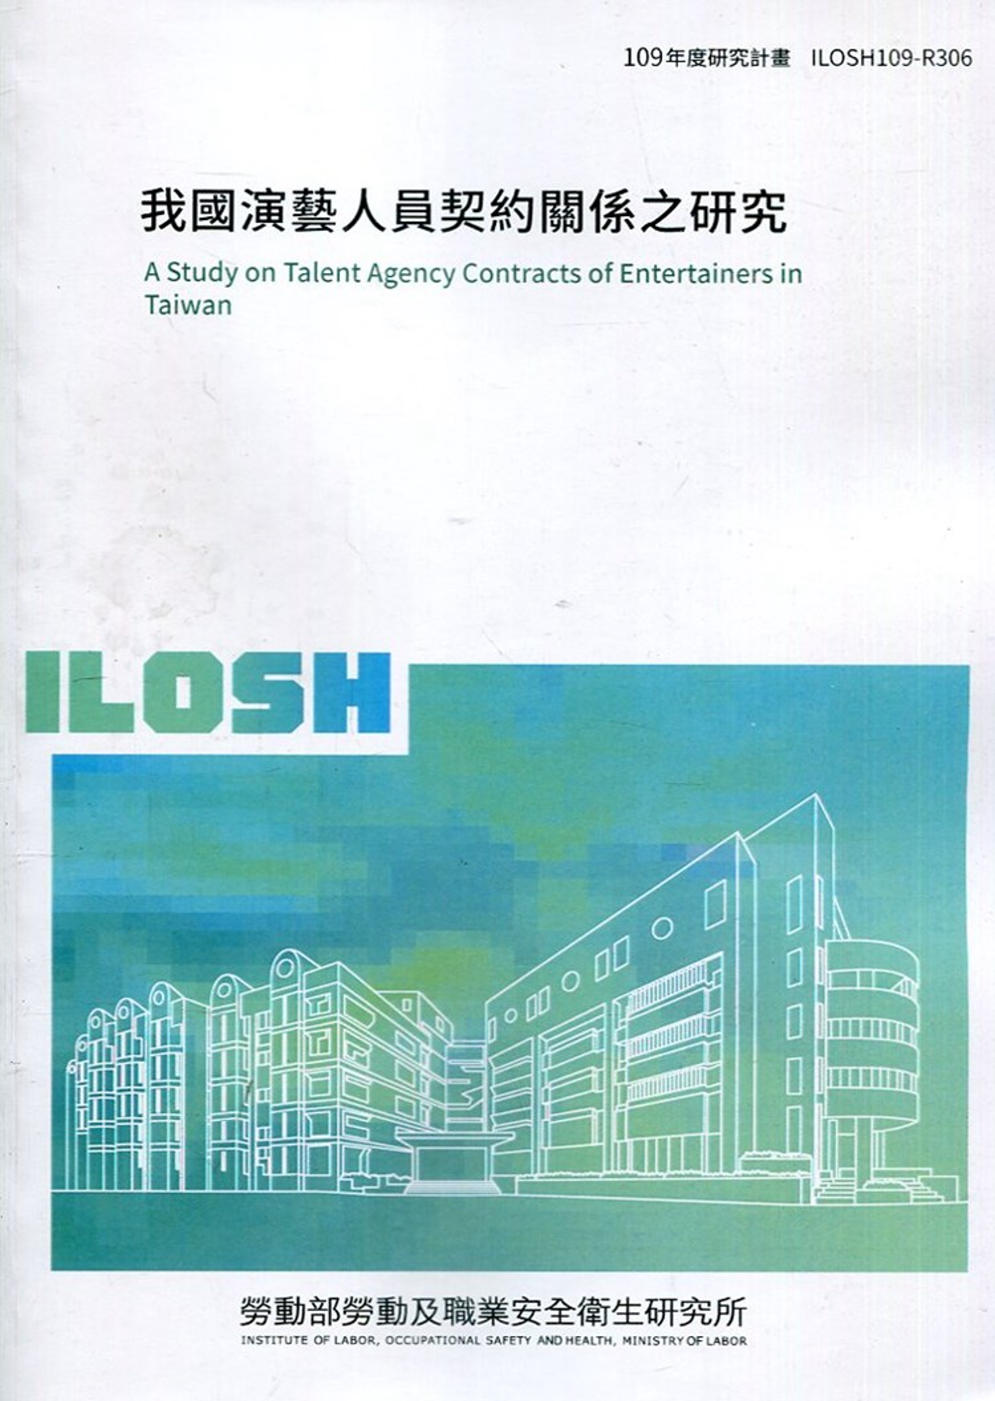 我國演藝人員契約關係之研究 ILOSH109-R306